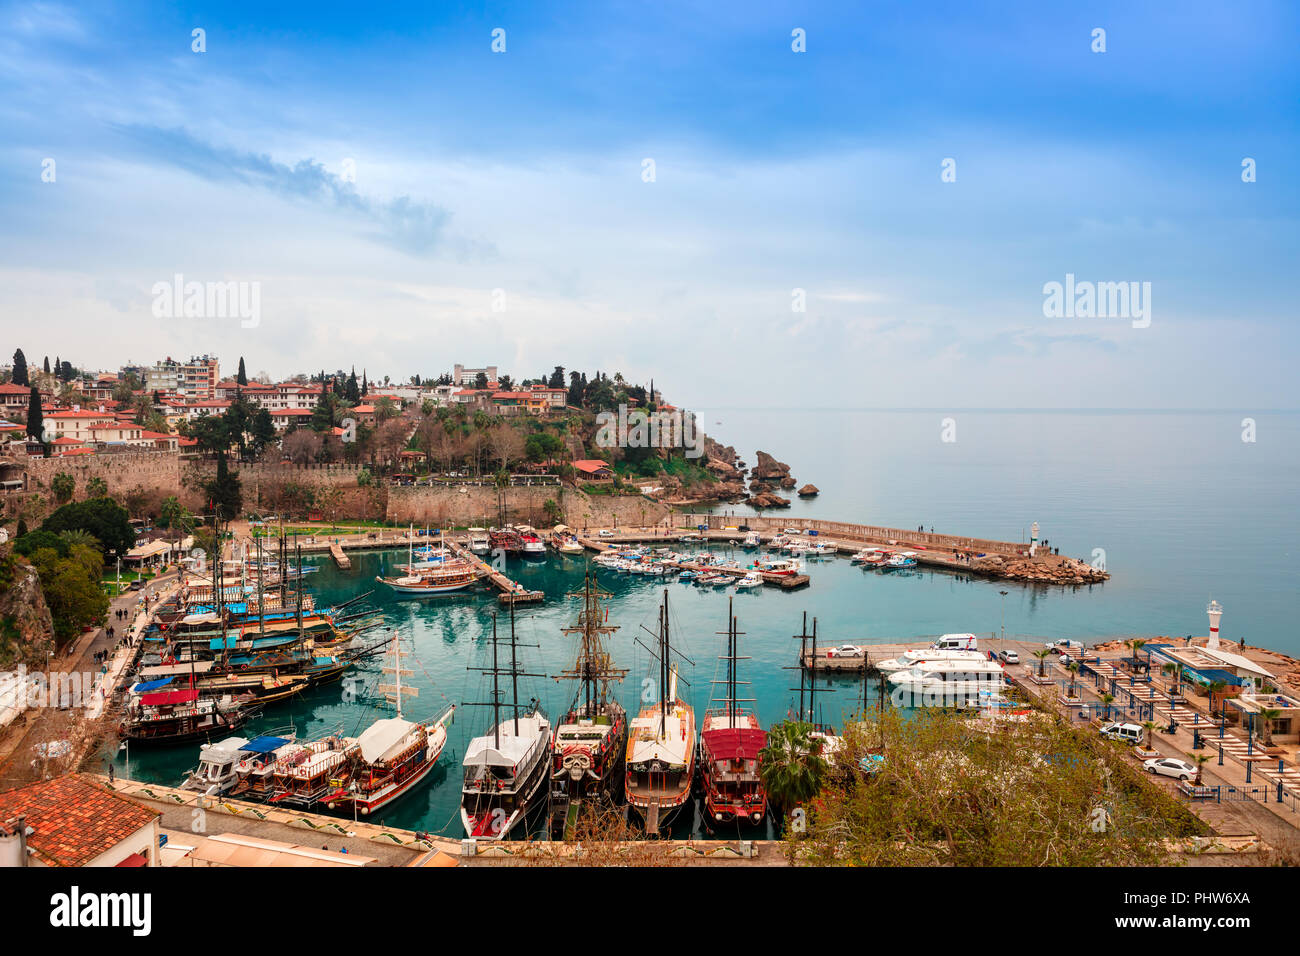 Petit port de plaisance de la vieille ville historique d'Antalya, connu sous le nom de Kaleici. Banque D'Images